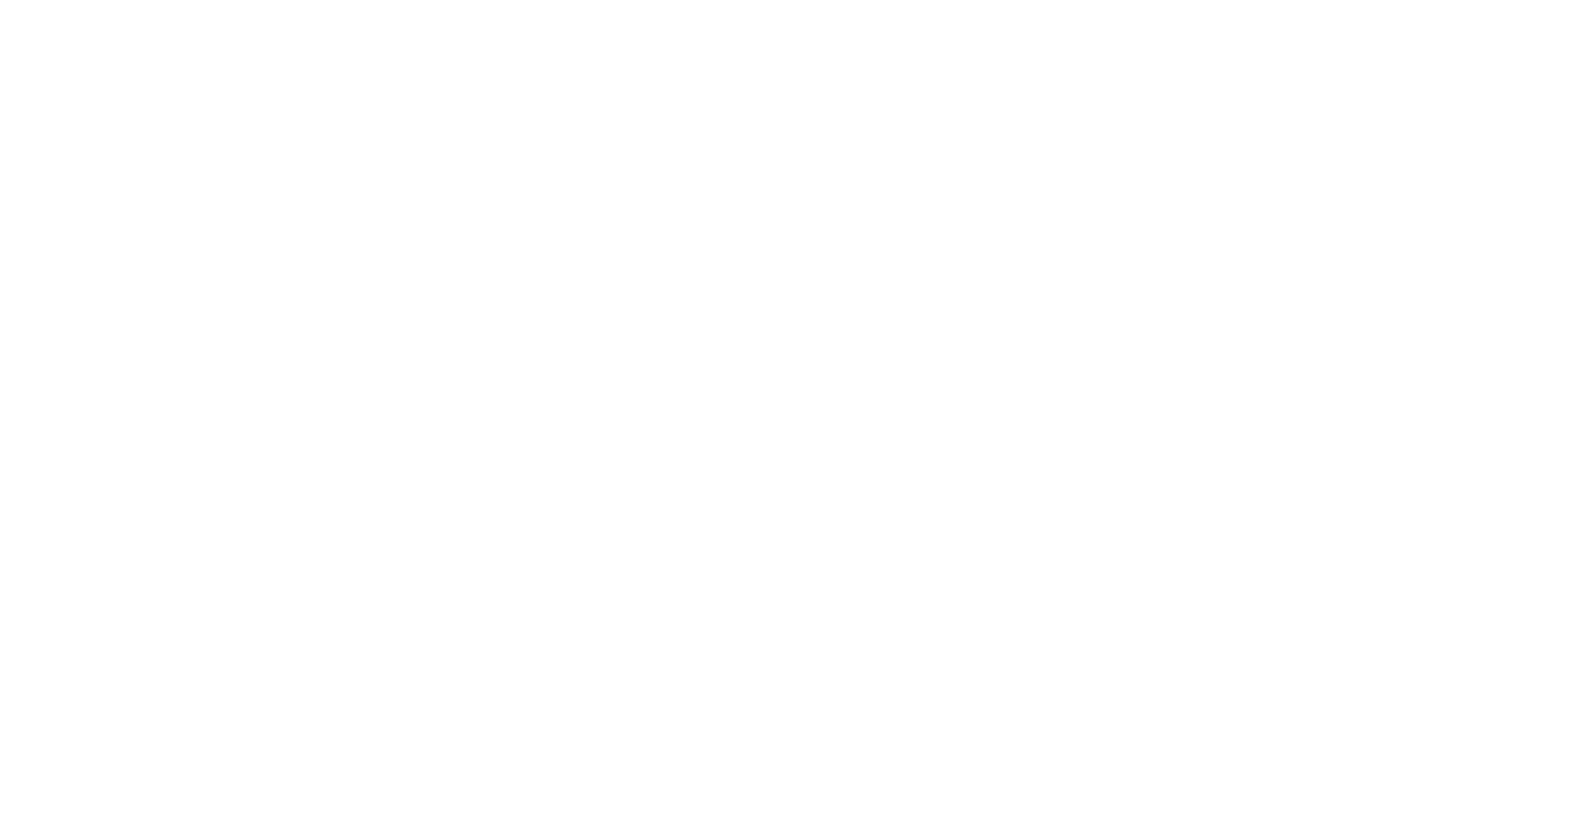 ryde logo for dark backgrounds (transparent PNG)